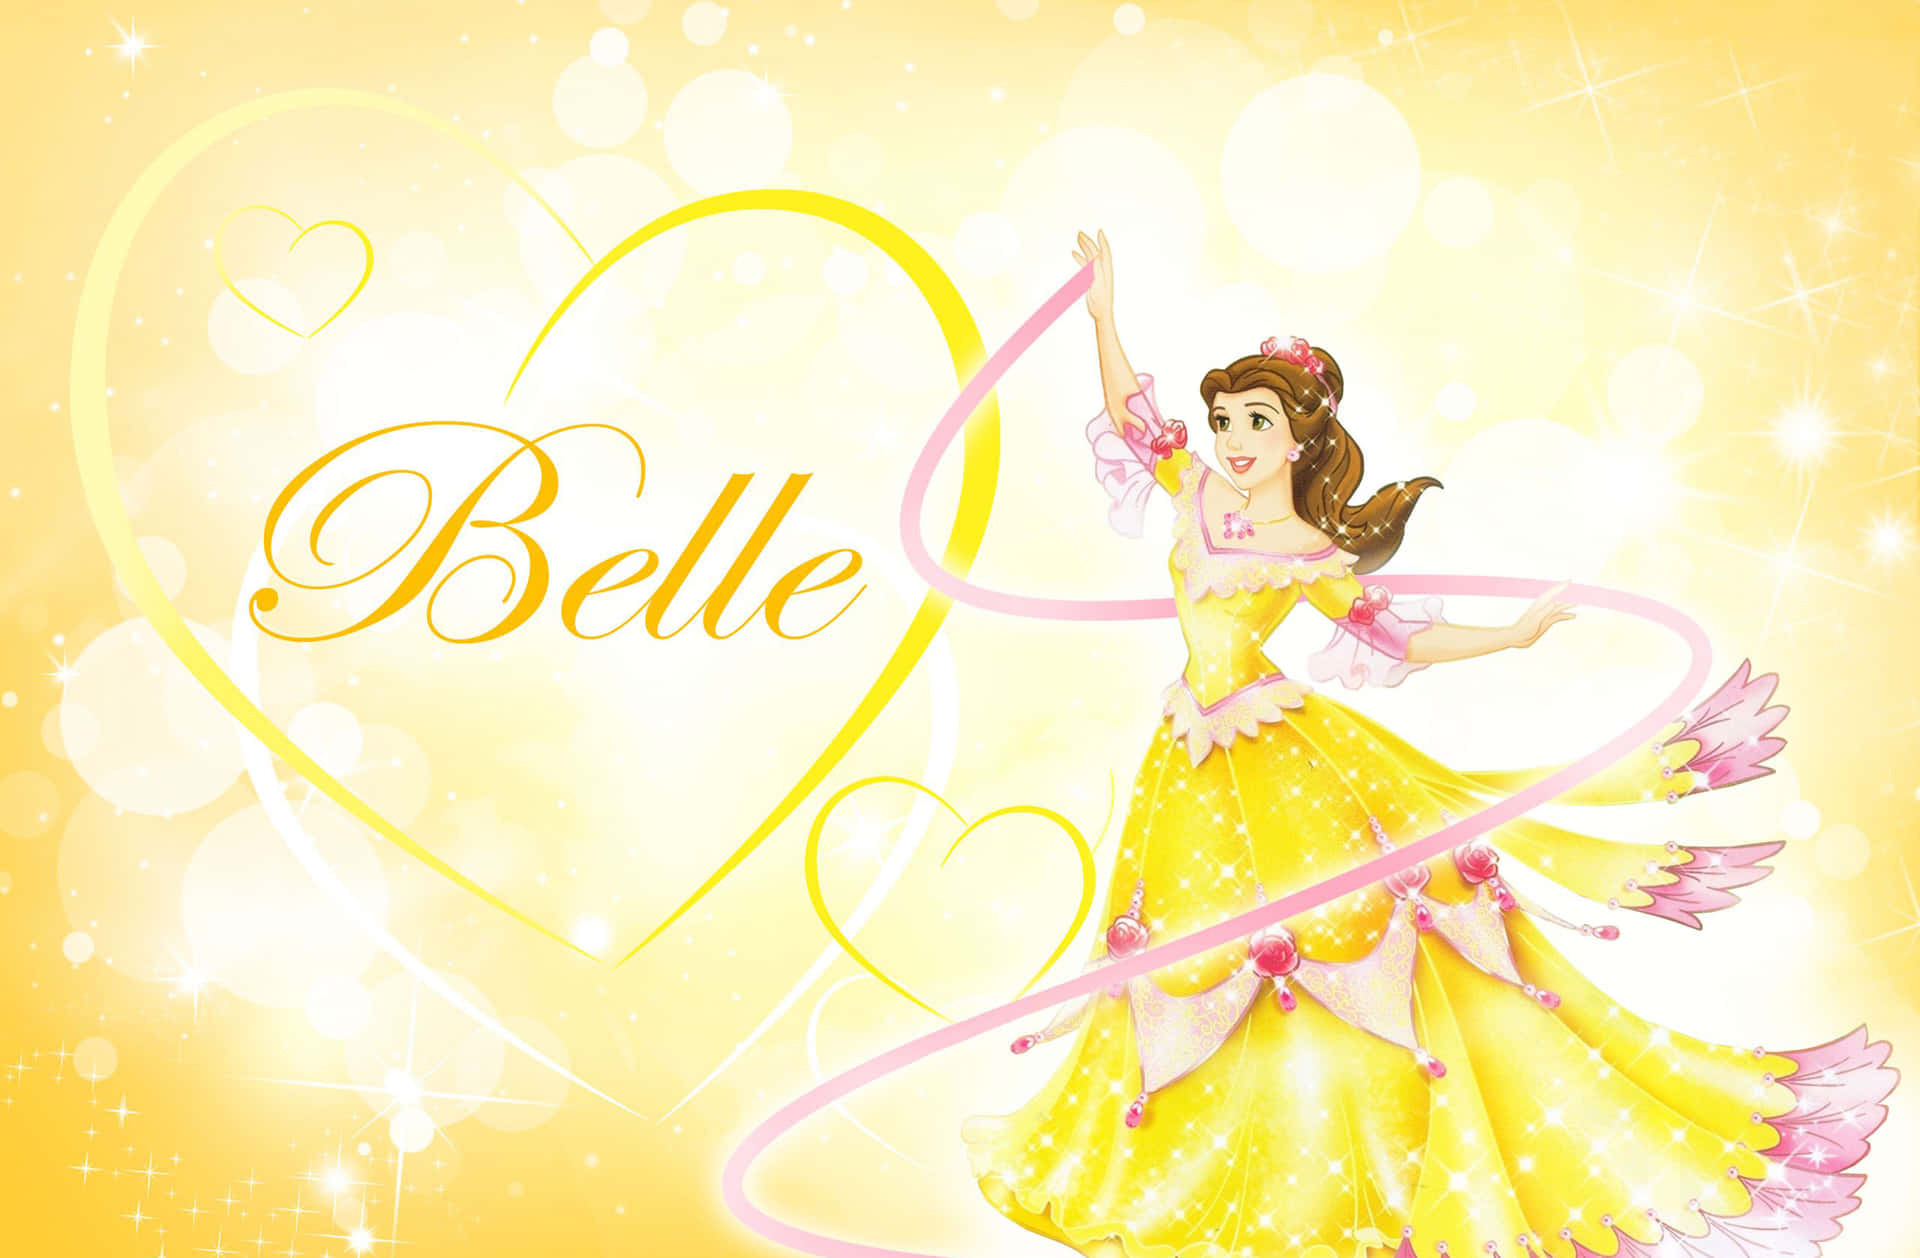 Vierder Beliebtesten Disney-prinzessinnen, Cinderella, Schneewittchen, Jasmin Und Belle